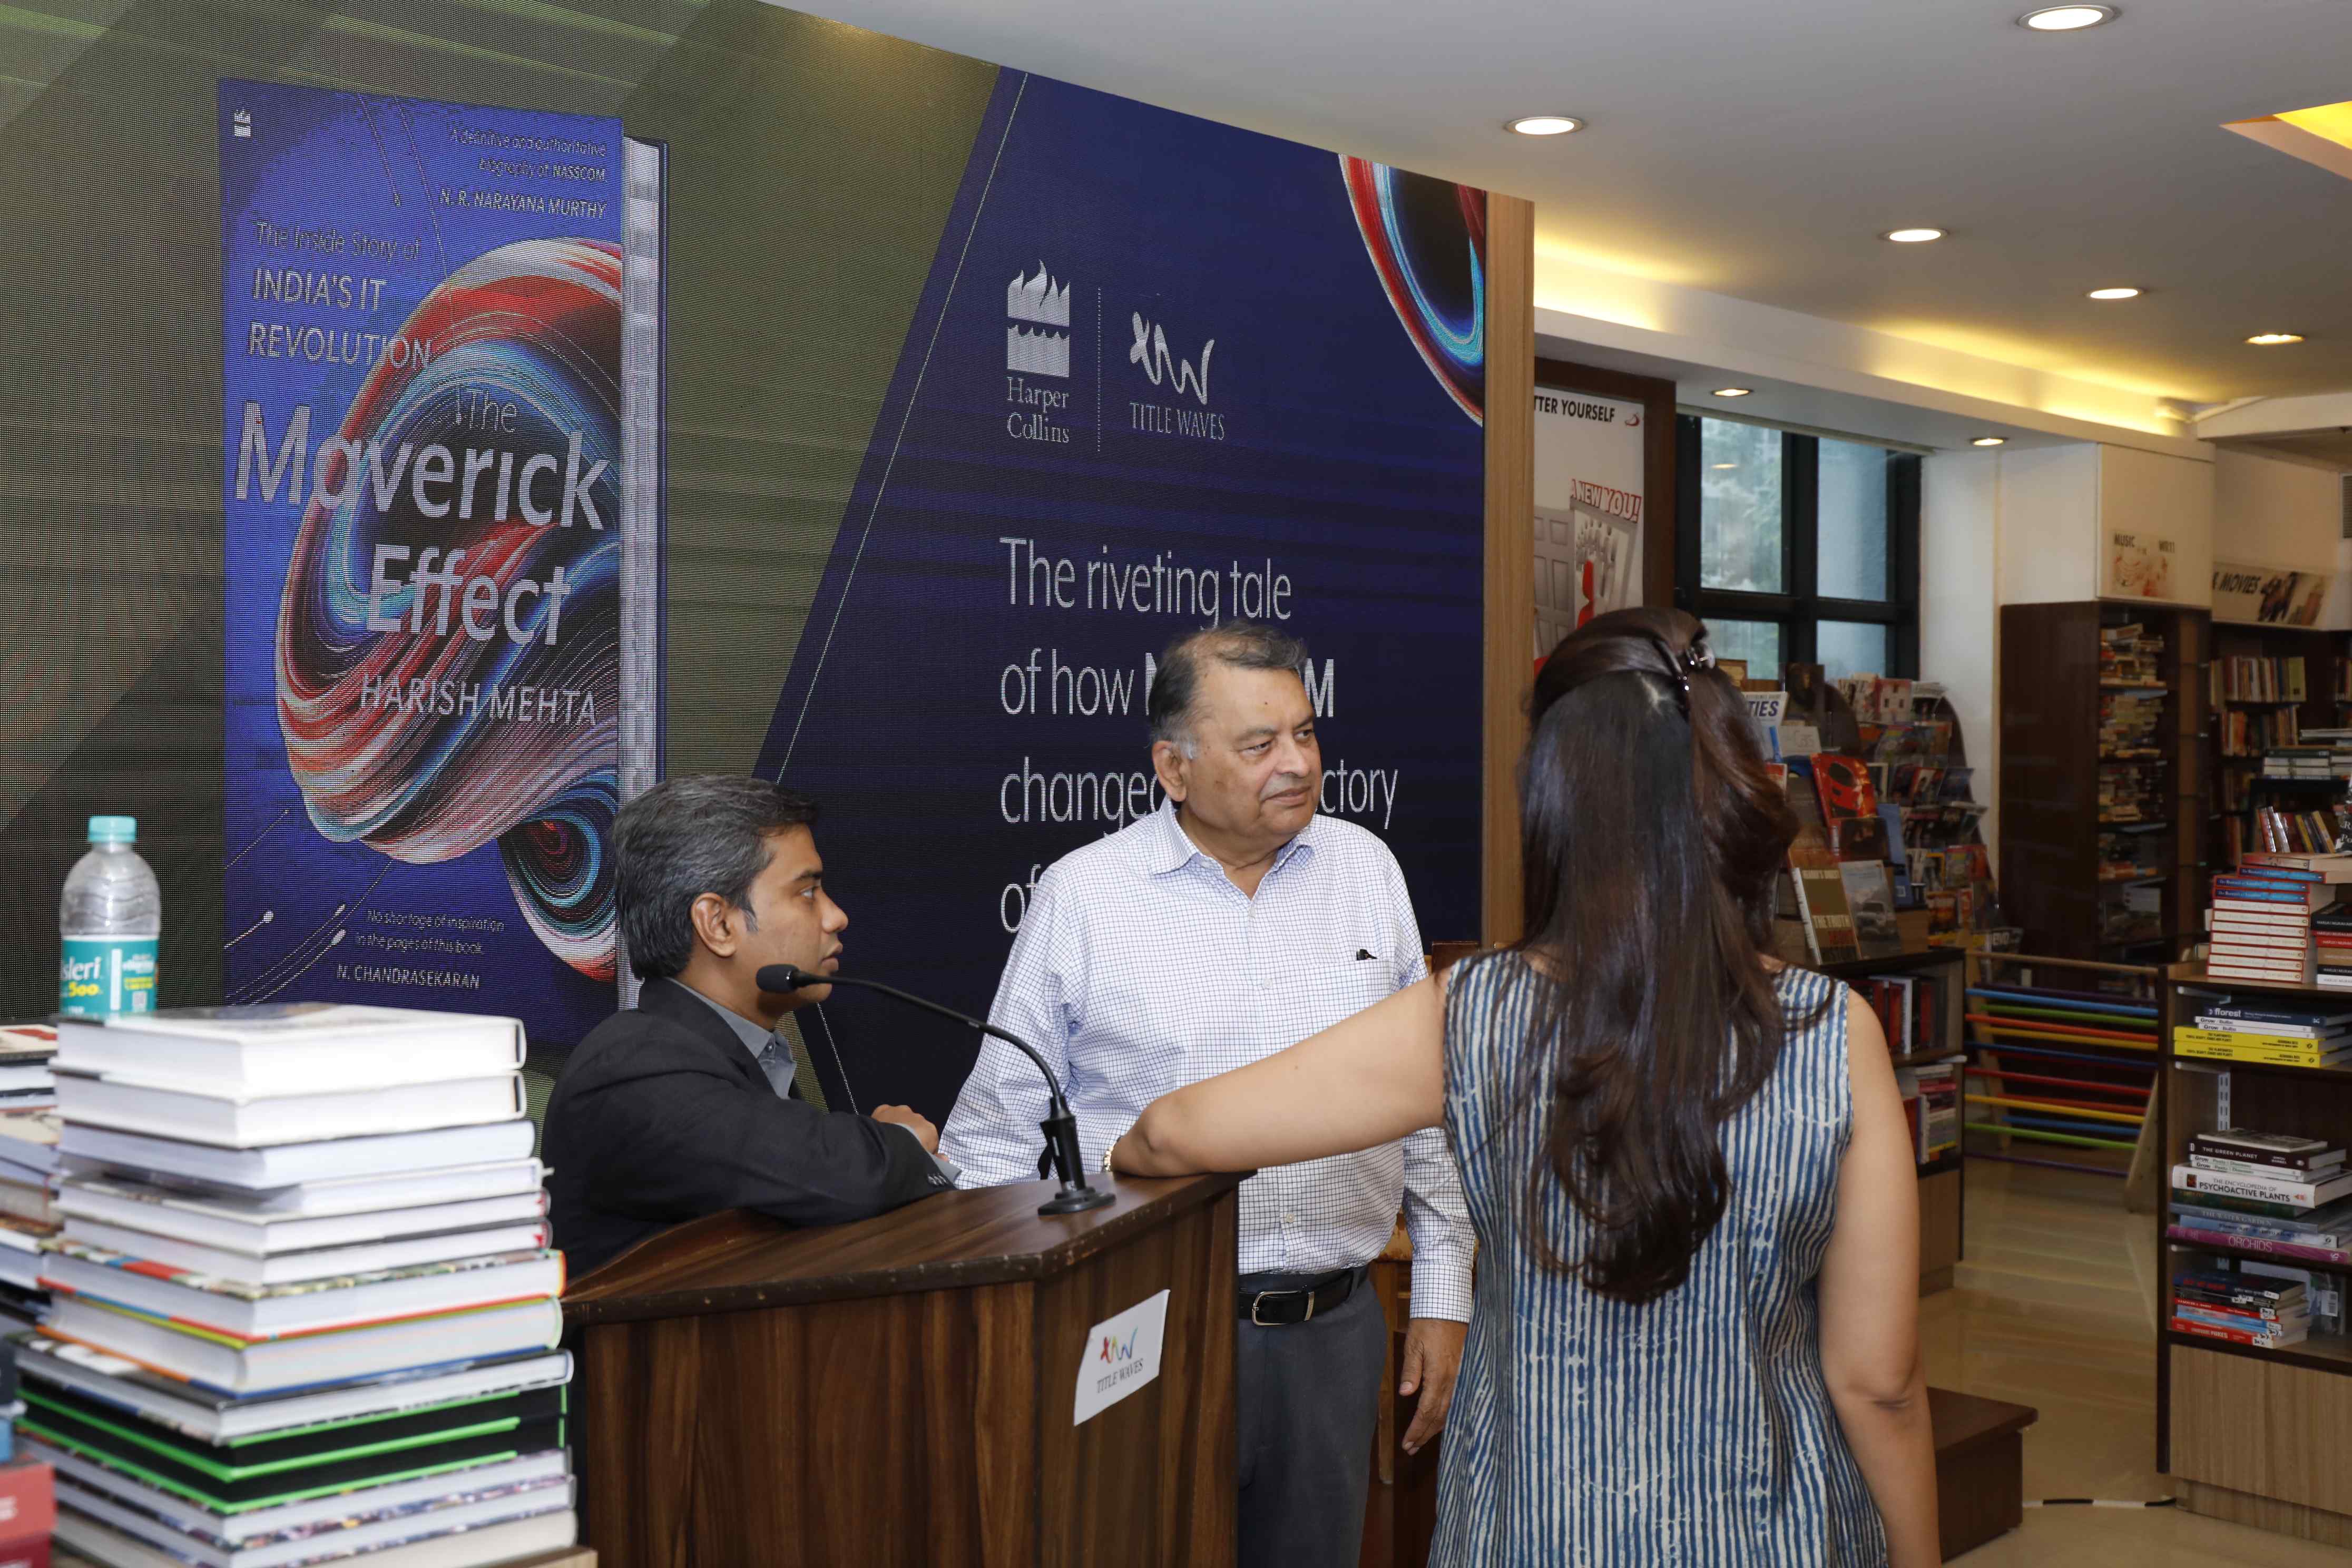 TitleWaves, Mumbai Book Signing